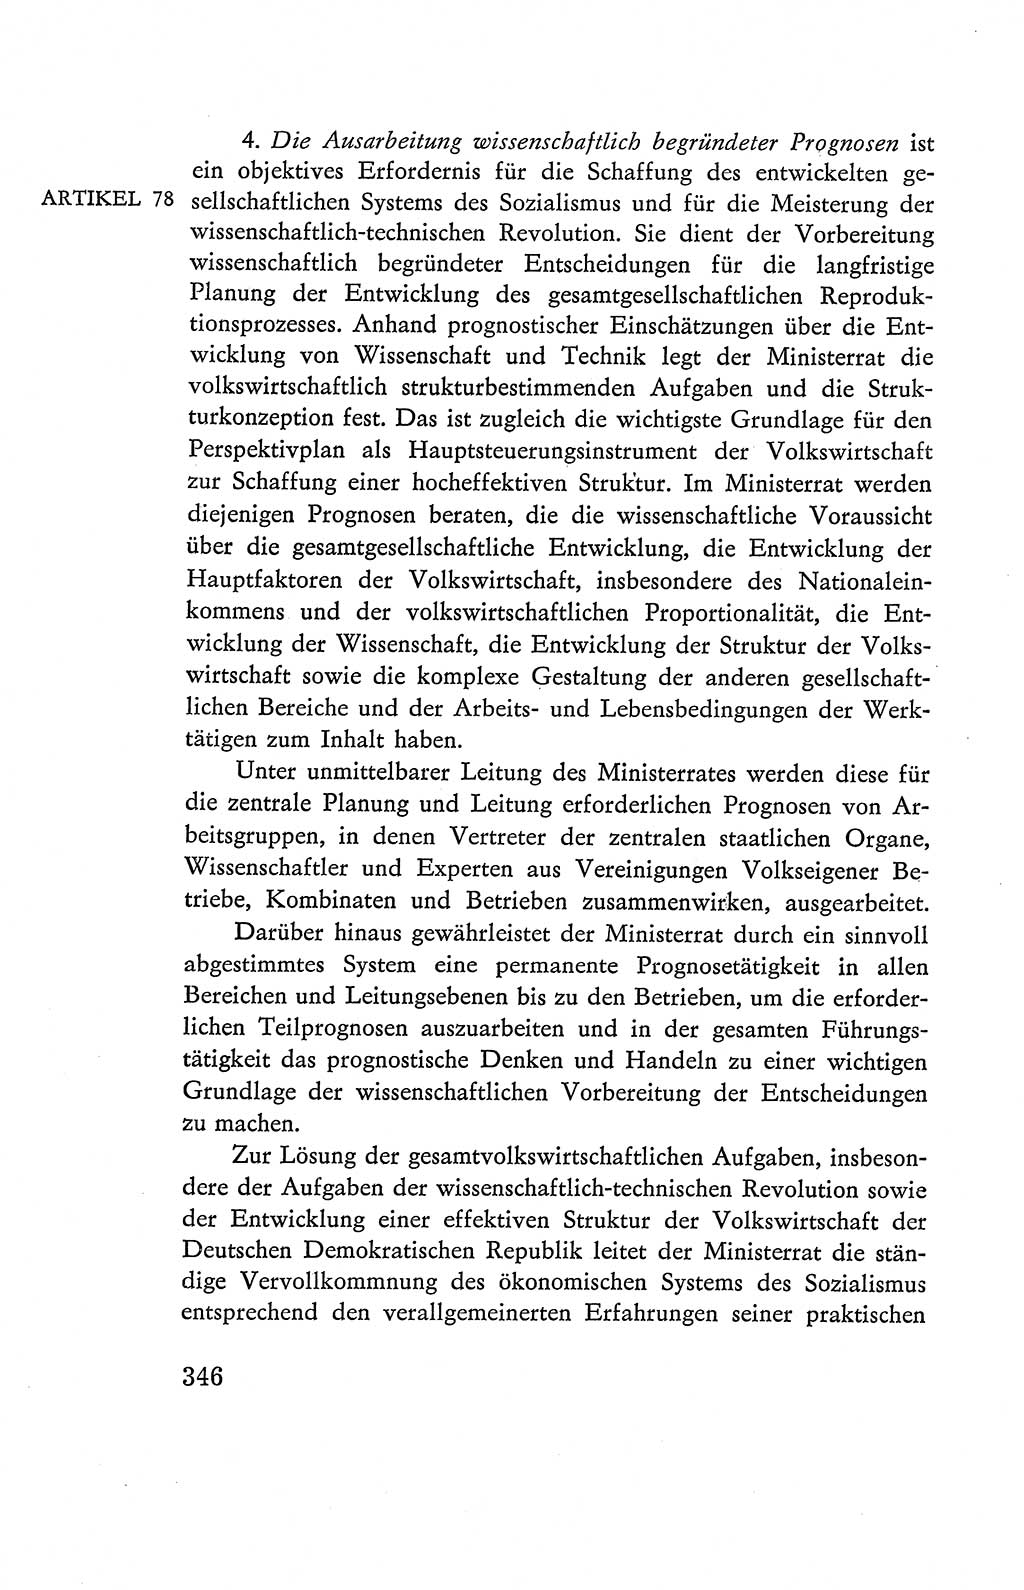 Verfassung der Deutschen Demokratischen Republik (DDR), Dokumente, Kommentar 1969, Band 2, Seite 346 (Verf. DDR Dok. Komm. 1969, Bd. 2, S. 346)